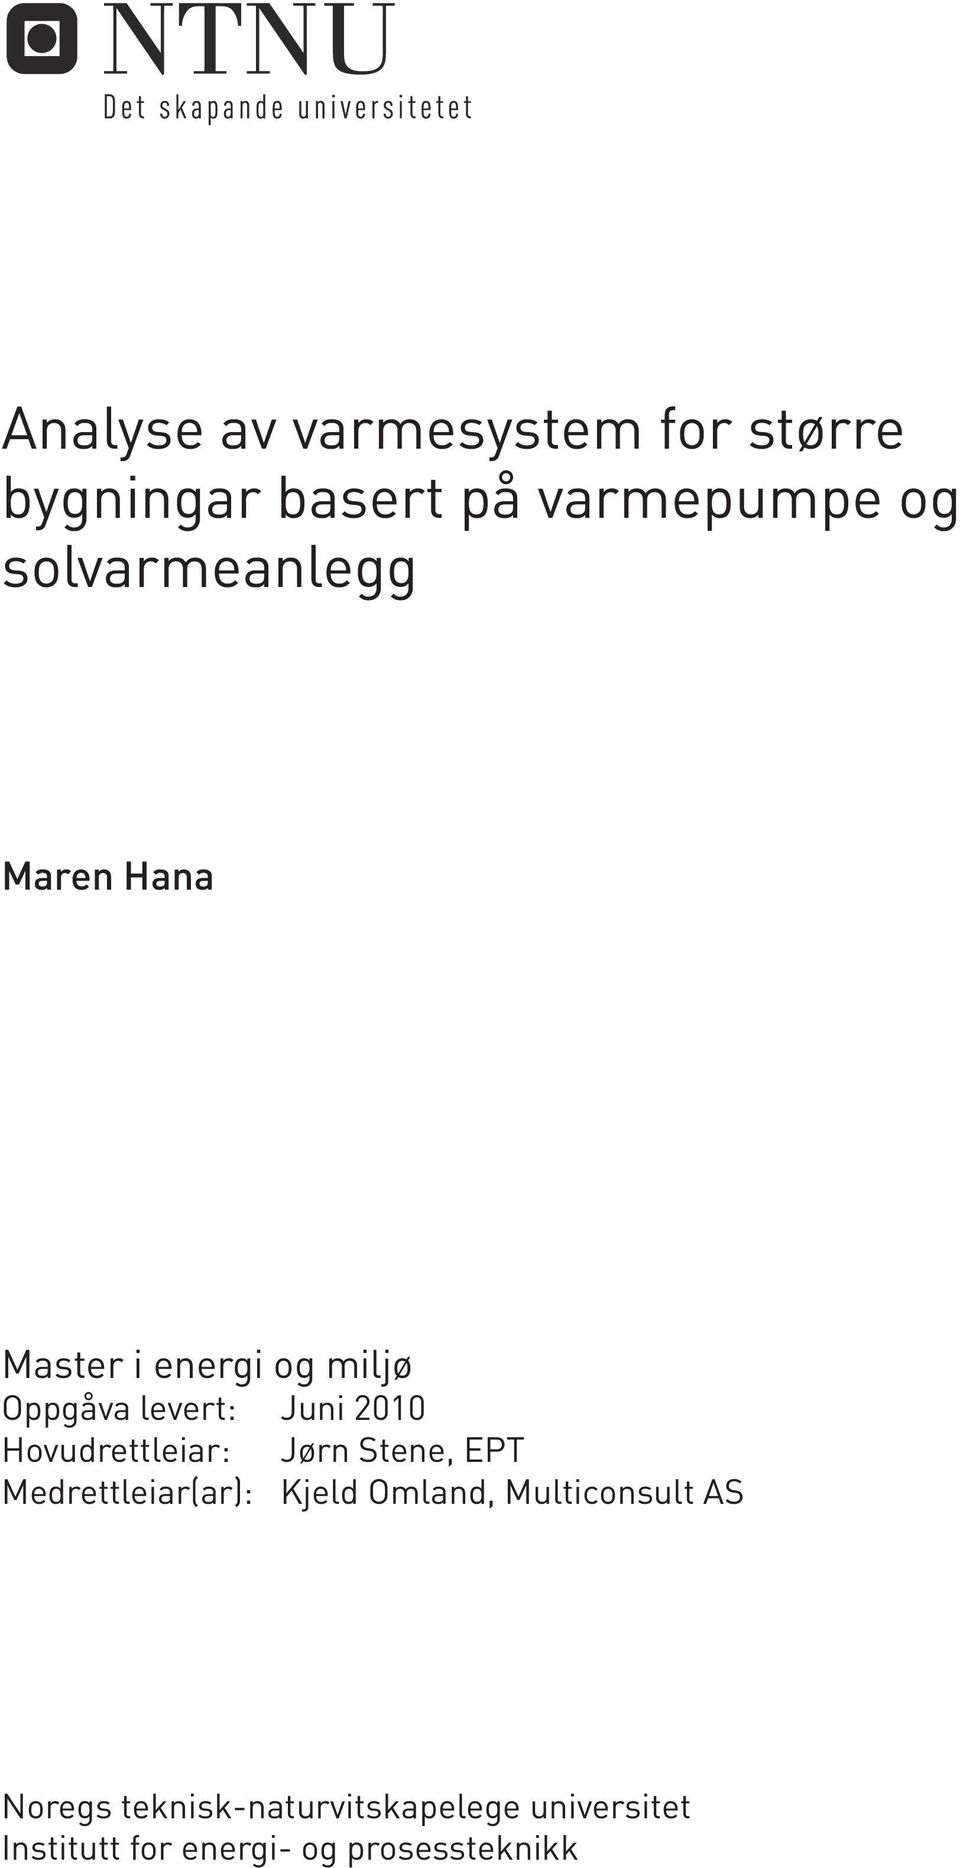 Hovudrettleiar: Jørn Stene, EPT Medrettleiar(ar): Kjeld Omland, Multiconsult